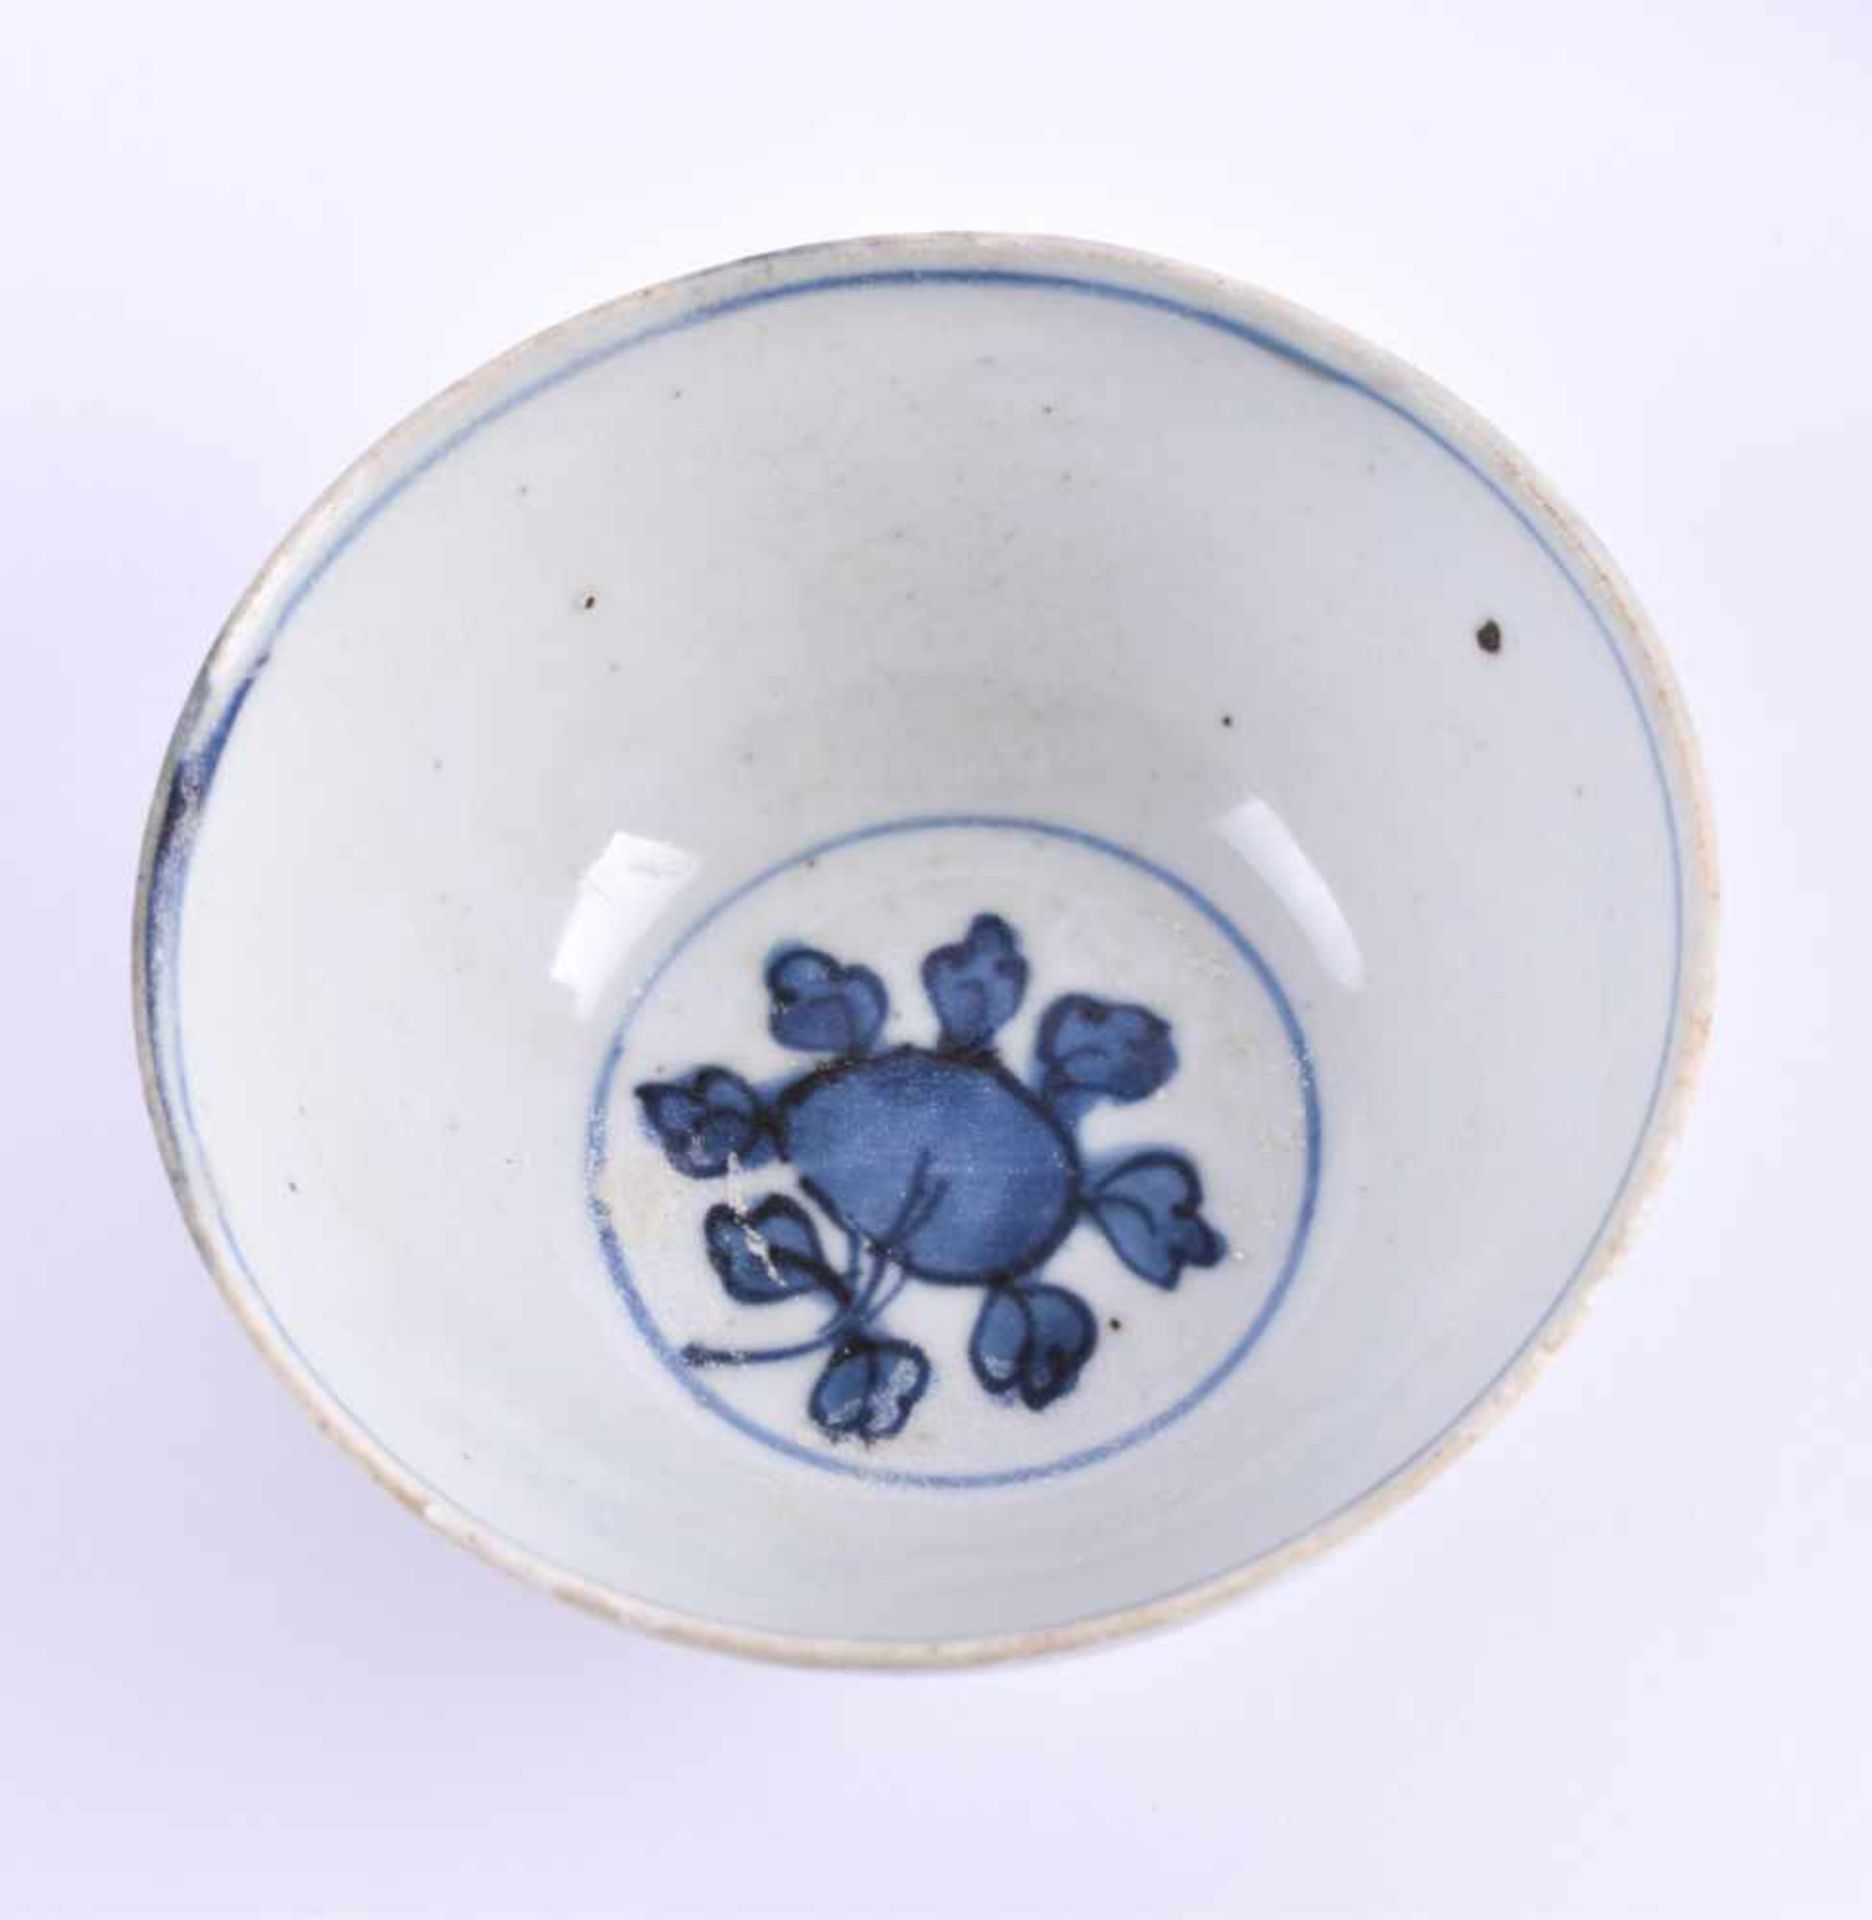 2 Schalen China Ming Periodemit blau-weiß Malerei, oberhalb am Rand jeweils mit einigen kleinen - Image 5 of 7